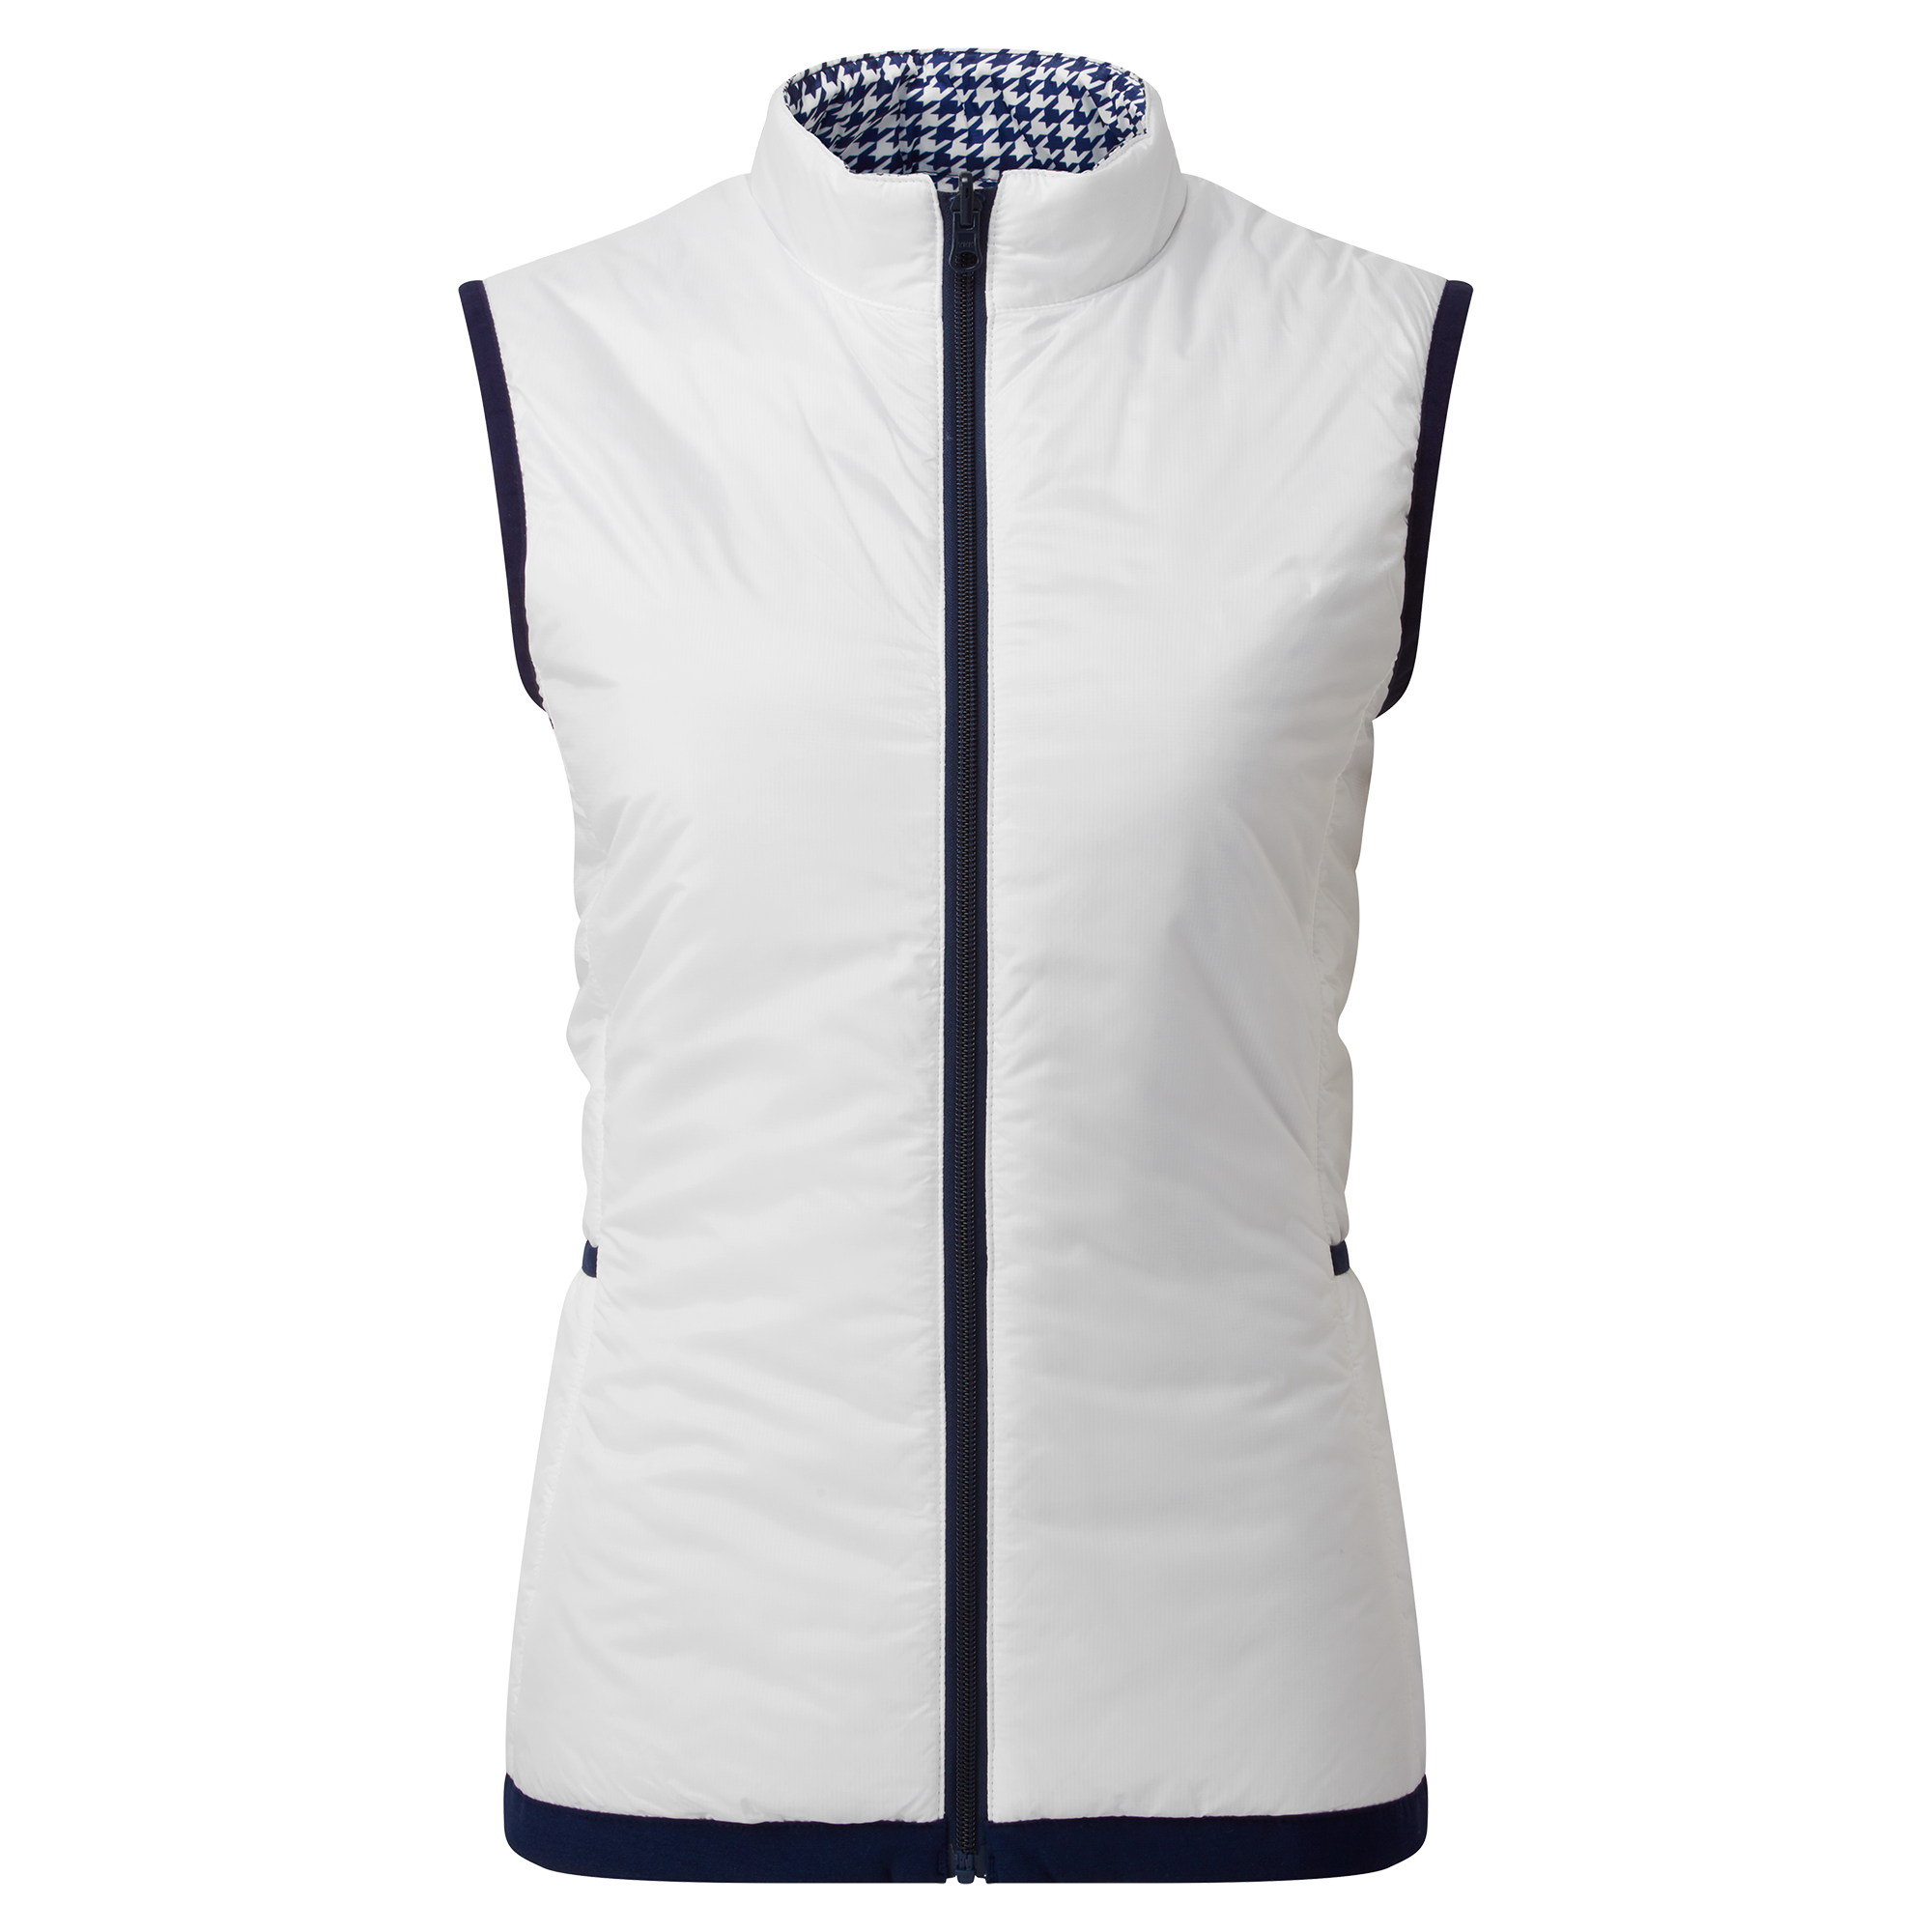 Levně FootJoy Insulated oboustranná dámská vesta, bílá/tmavě modrá